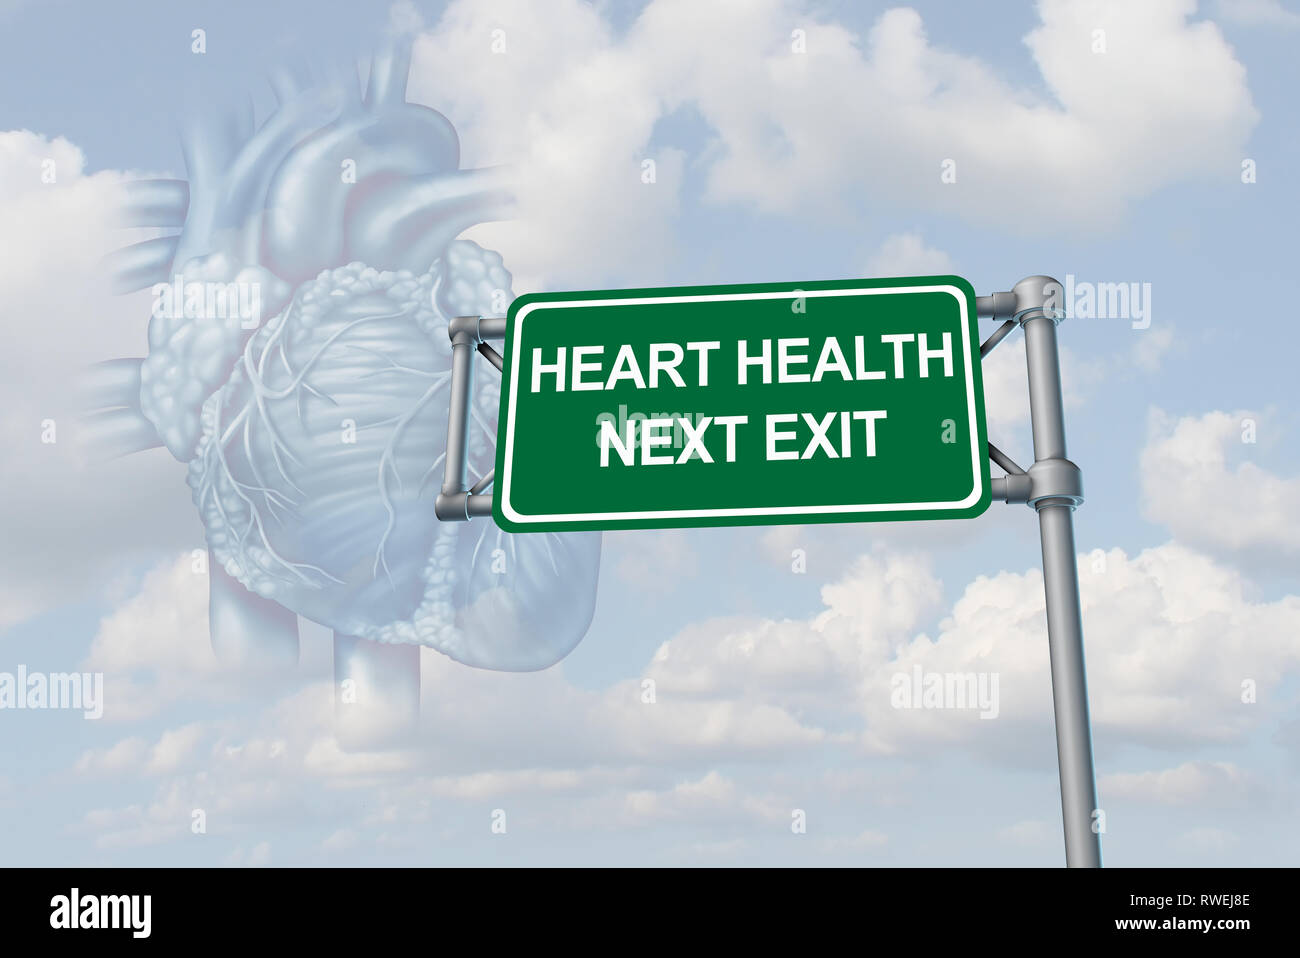 Menschliche Herz Gesundheit und Körper Anatomie wie ein gesundes Herz-Kreislauf-System oder koronaren medizinische Versorgung mit 3D-Illustration Elemente. Stockfoto